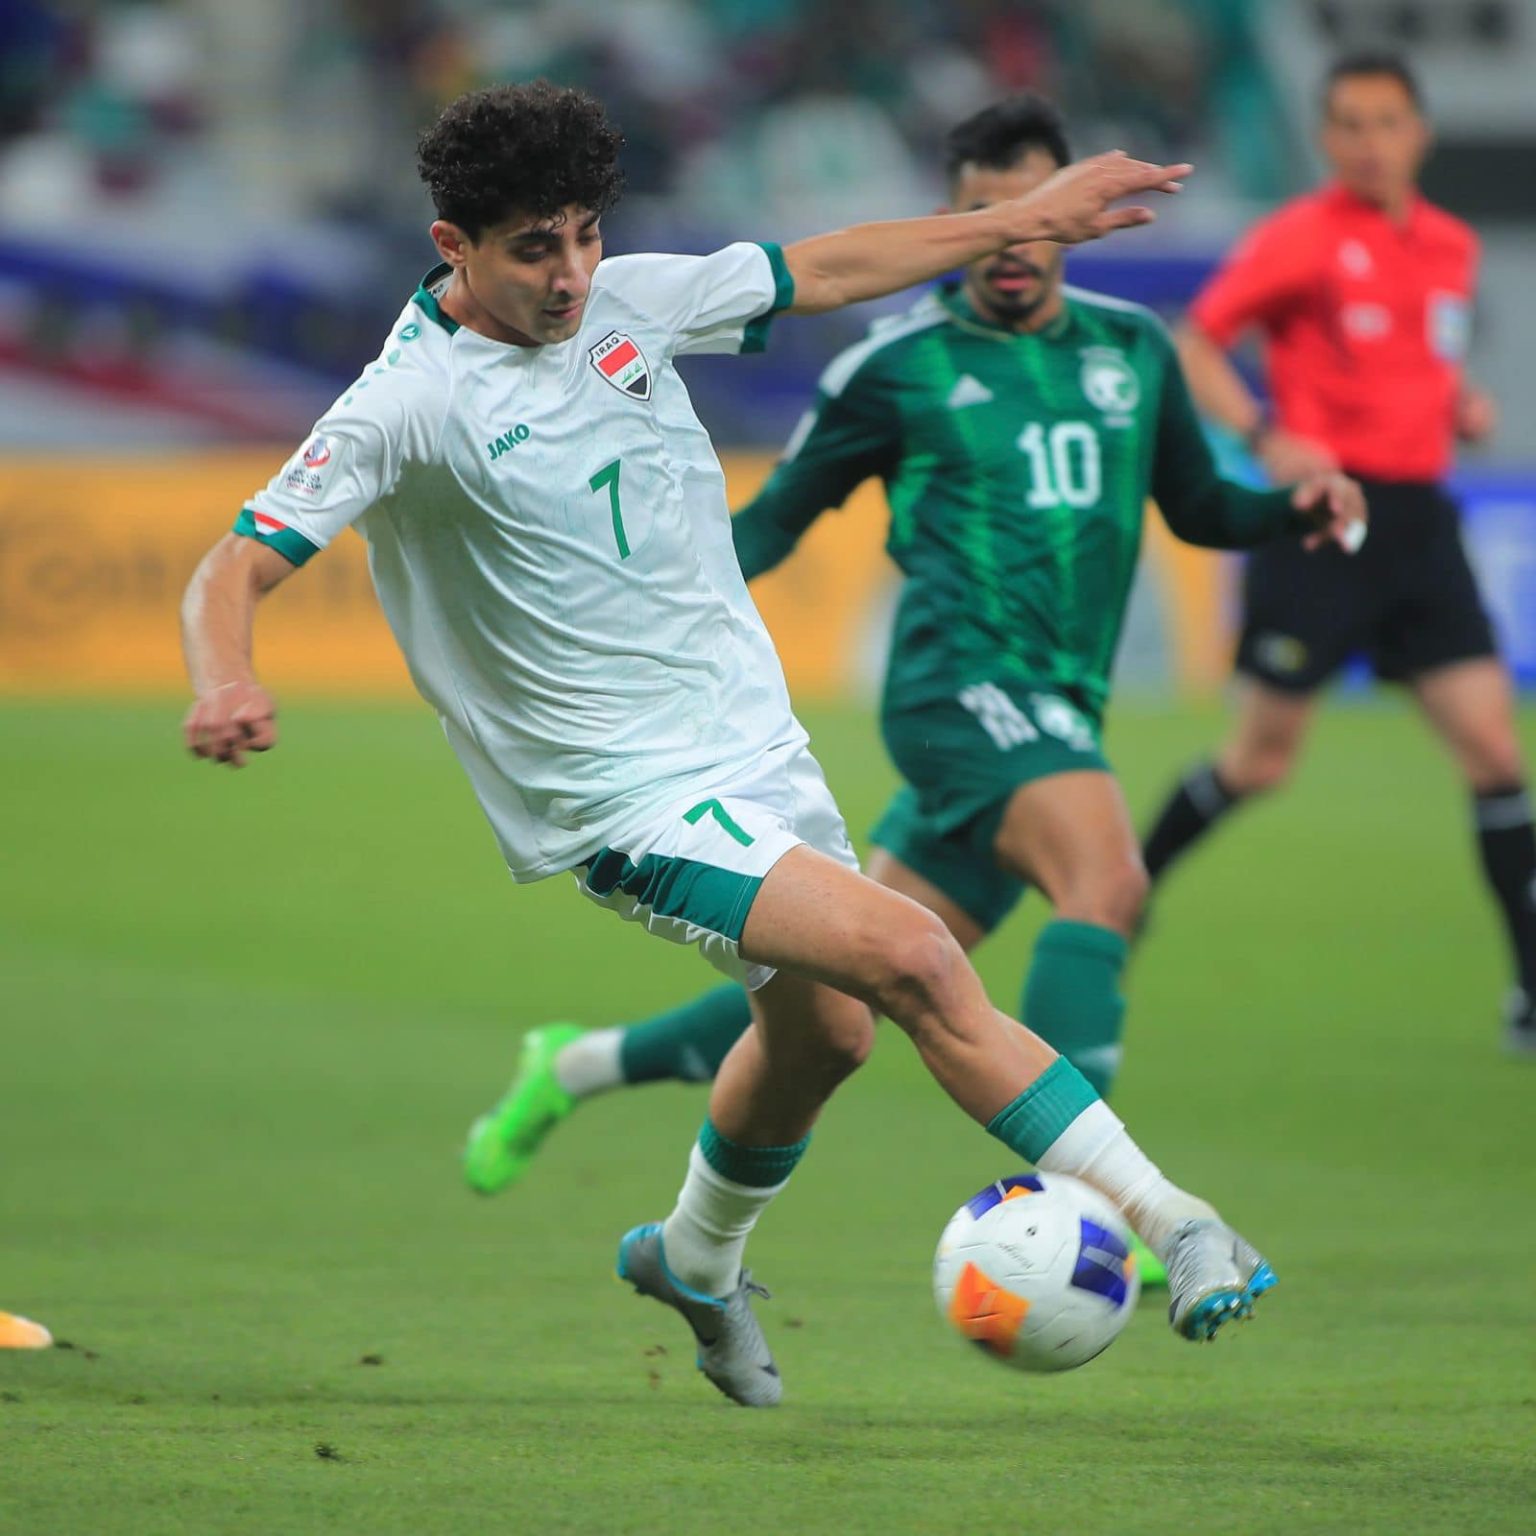 المنتخب العراقي يتأهل لربع نهائي كأس آسيا بتغلبه على نظيره السعودي 2-1